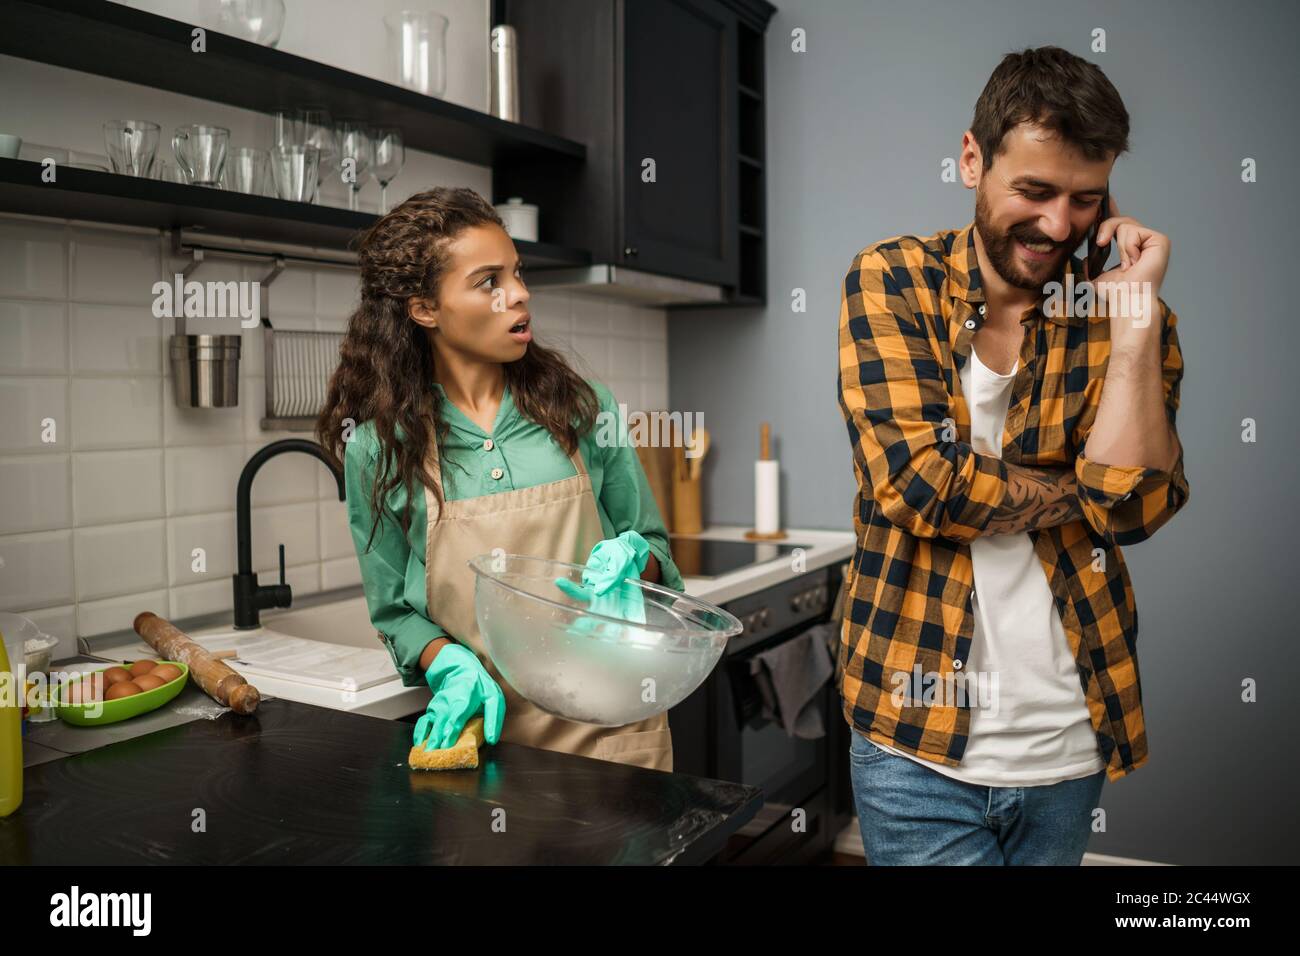 Junge multiethnische Paare putzt ihre Küche. Der Mann ist faul und die Frau ist wütend. Stockfoto